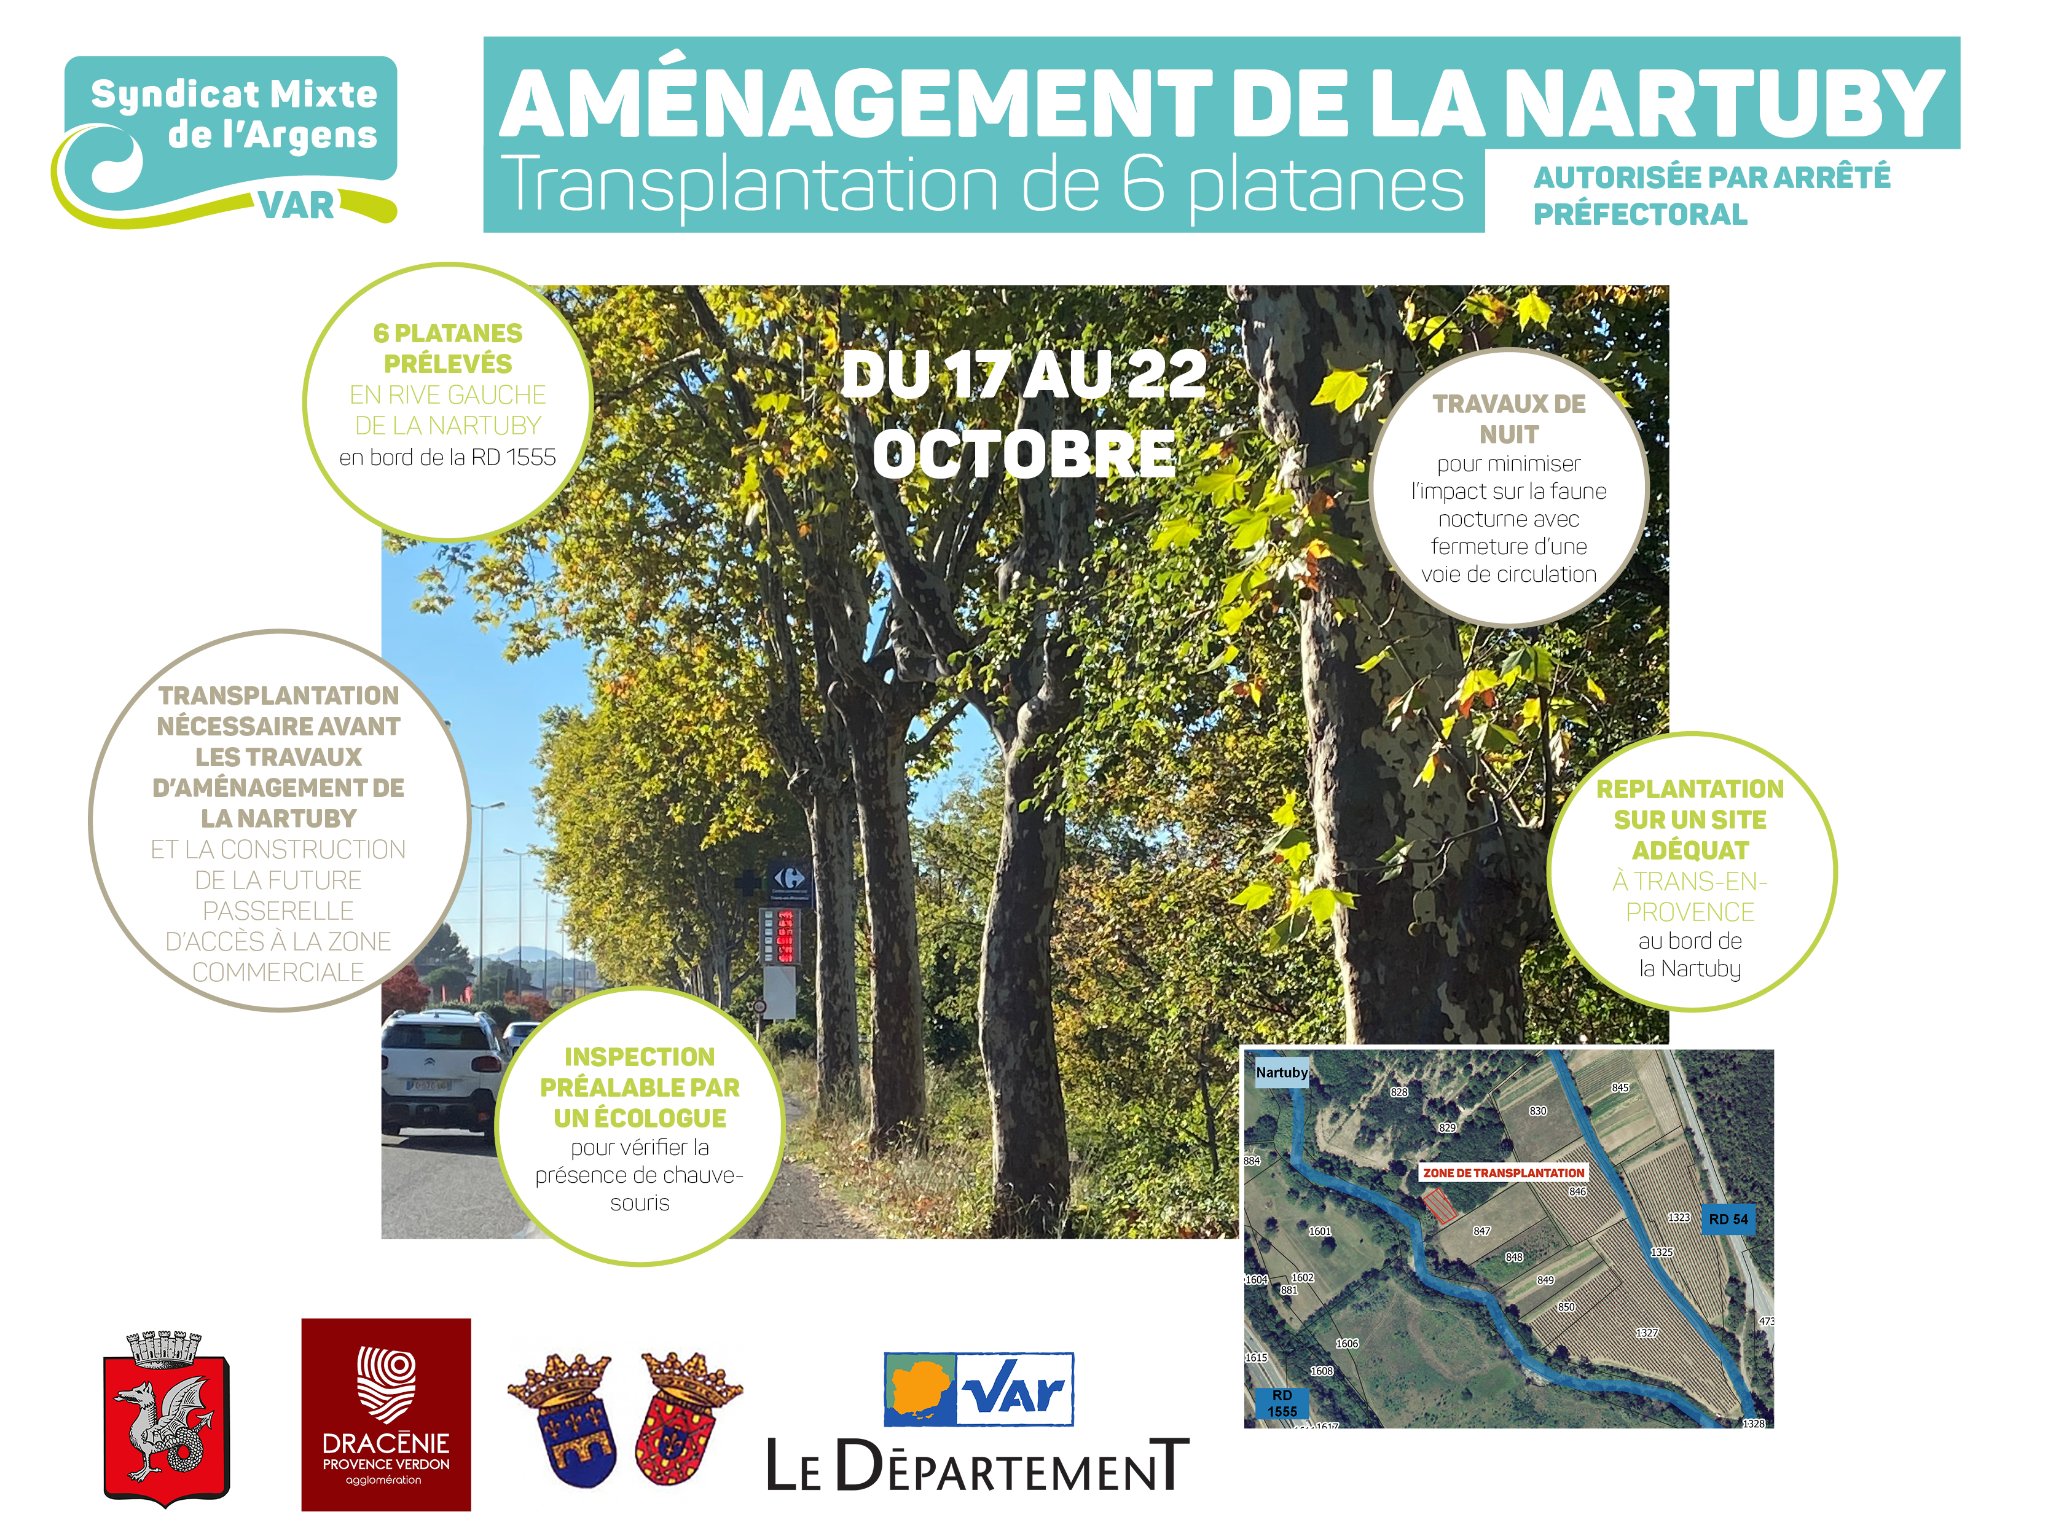 Aménagement de la Nartuby - Transplantation de 6 platanes à Trans-en-Provence par le SMA, du 17 au 22 octobre. Travaux de nuit.